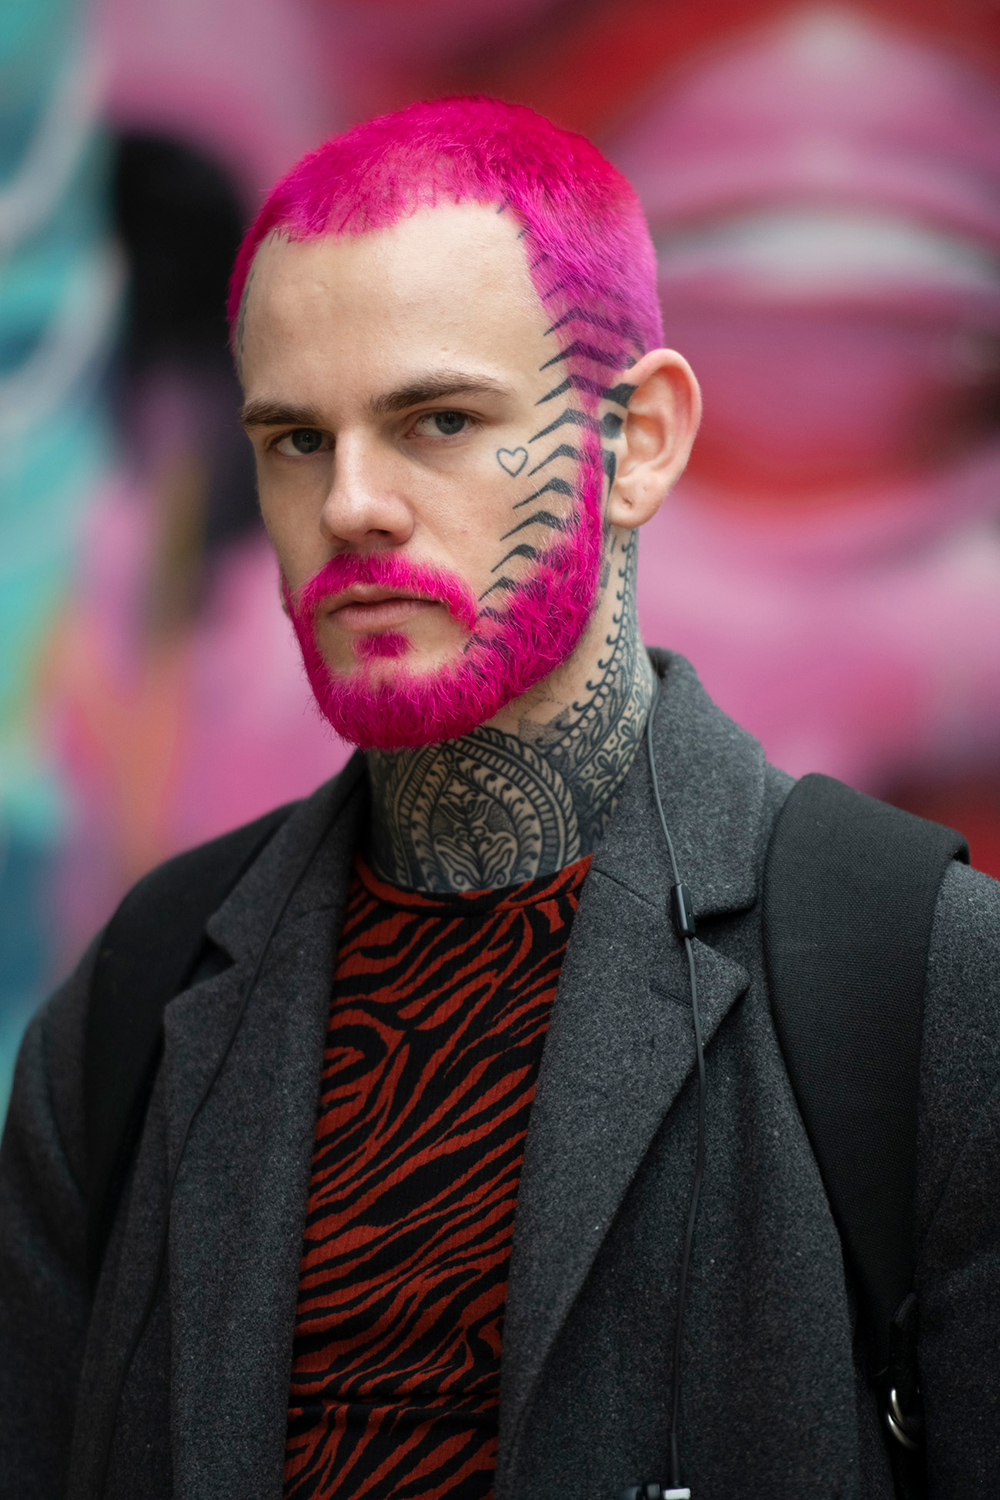 視線を集めること間違いなしのピンクヘアは、ひげもリンクさせて、とことん攻めたスタイルにまとめるのもあり。フェイスタトゥーもヘアスタイルの一部のようなデザインがクール。